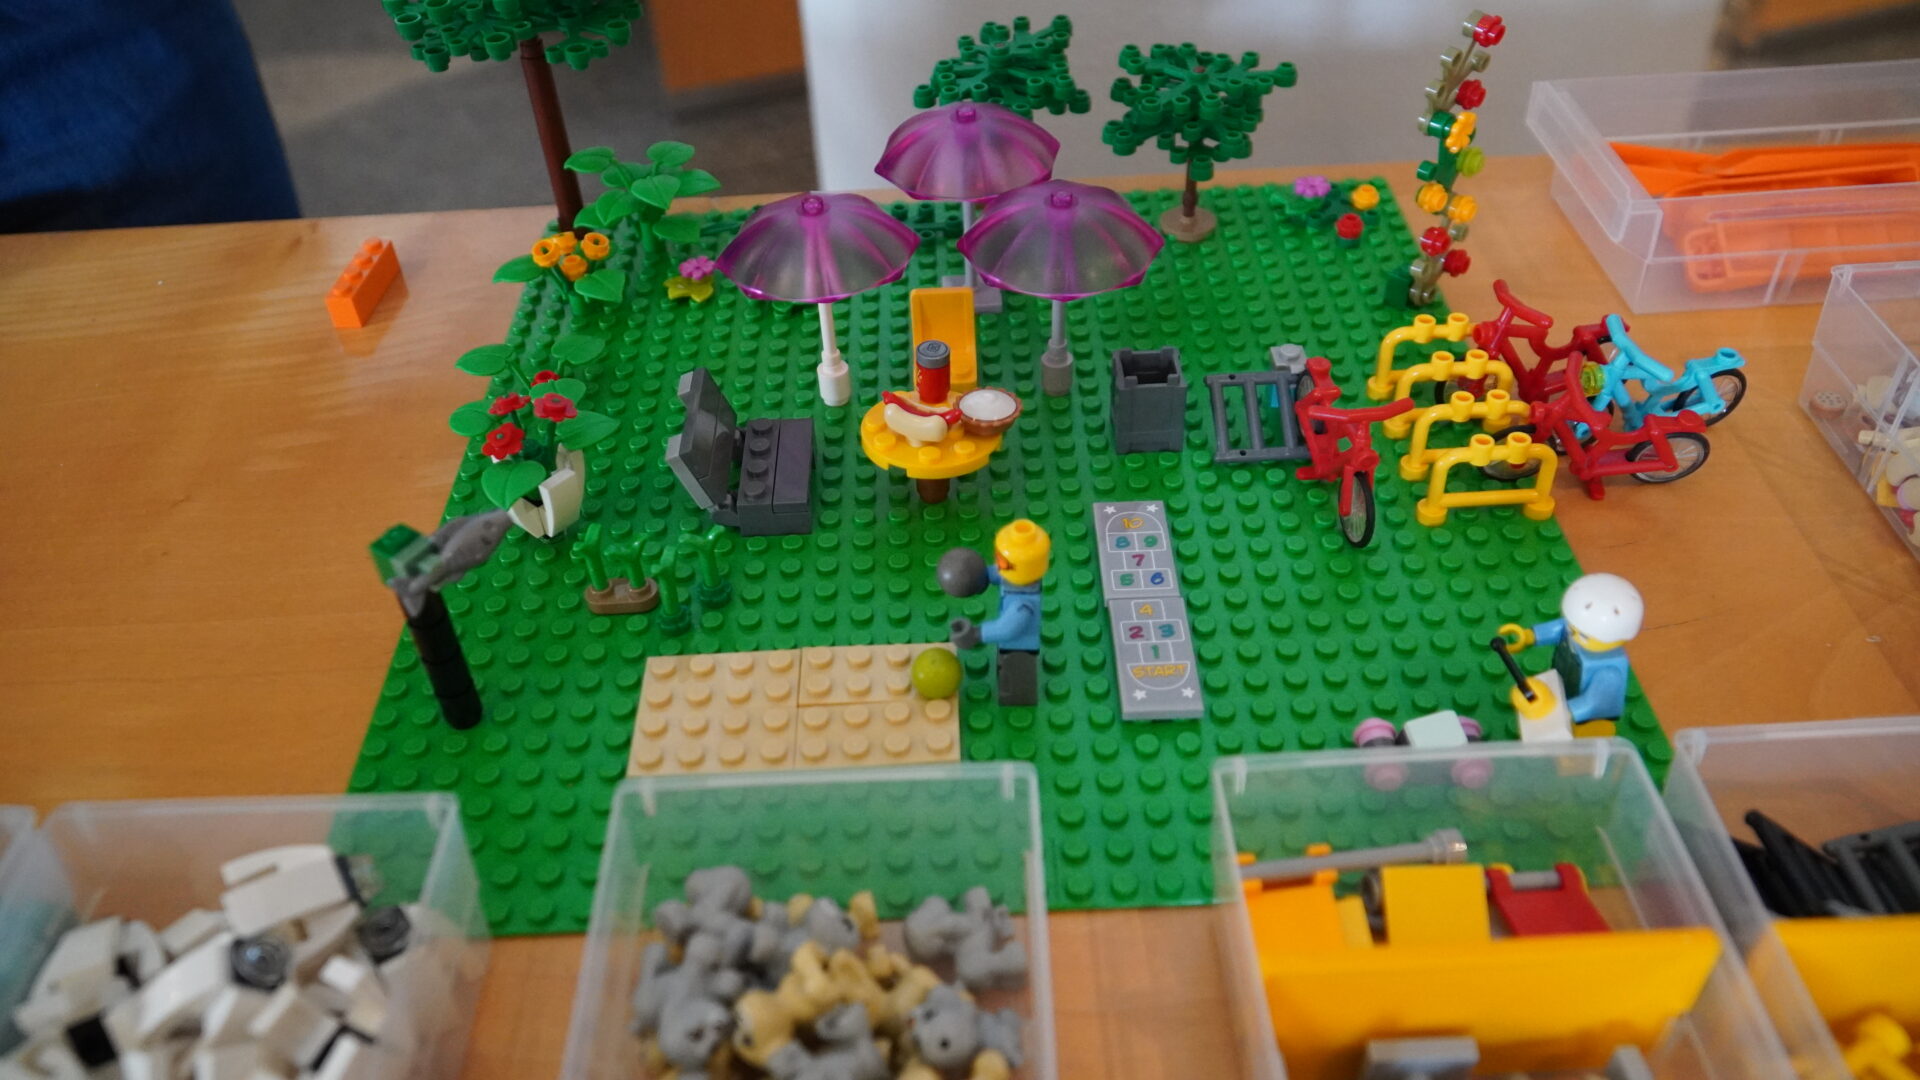 Aufbau aus Legosteinen zeigt einen öffentlichen Platz mit Schirmen, Sitzmöglichkeiten, Bäumen, Basketballfeld und Fahrrädern. Zwei Legofiguren spielen Basketball bzw. spielen mit einem ferngesteuerten Auto.